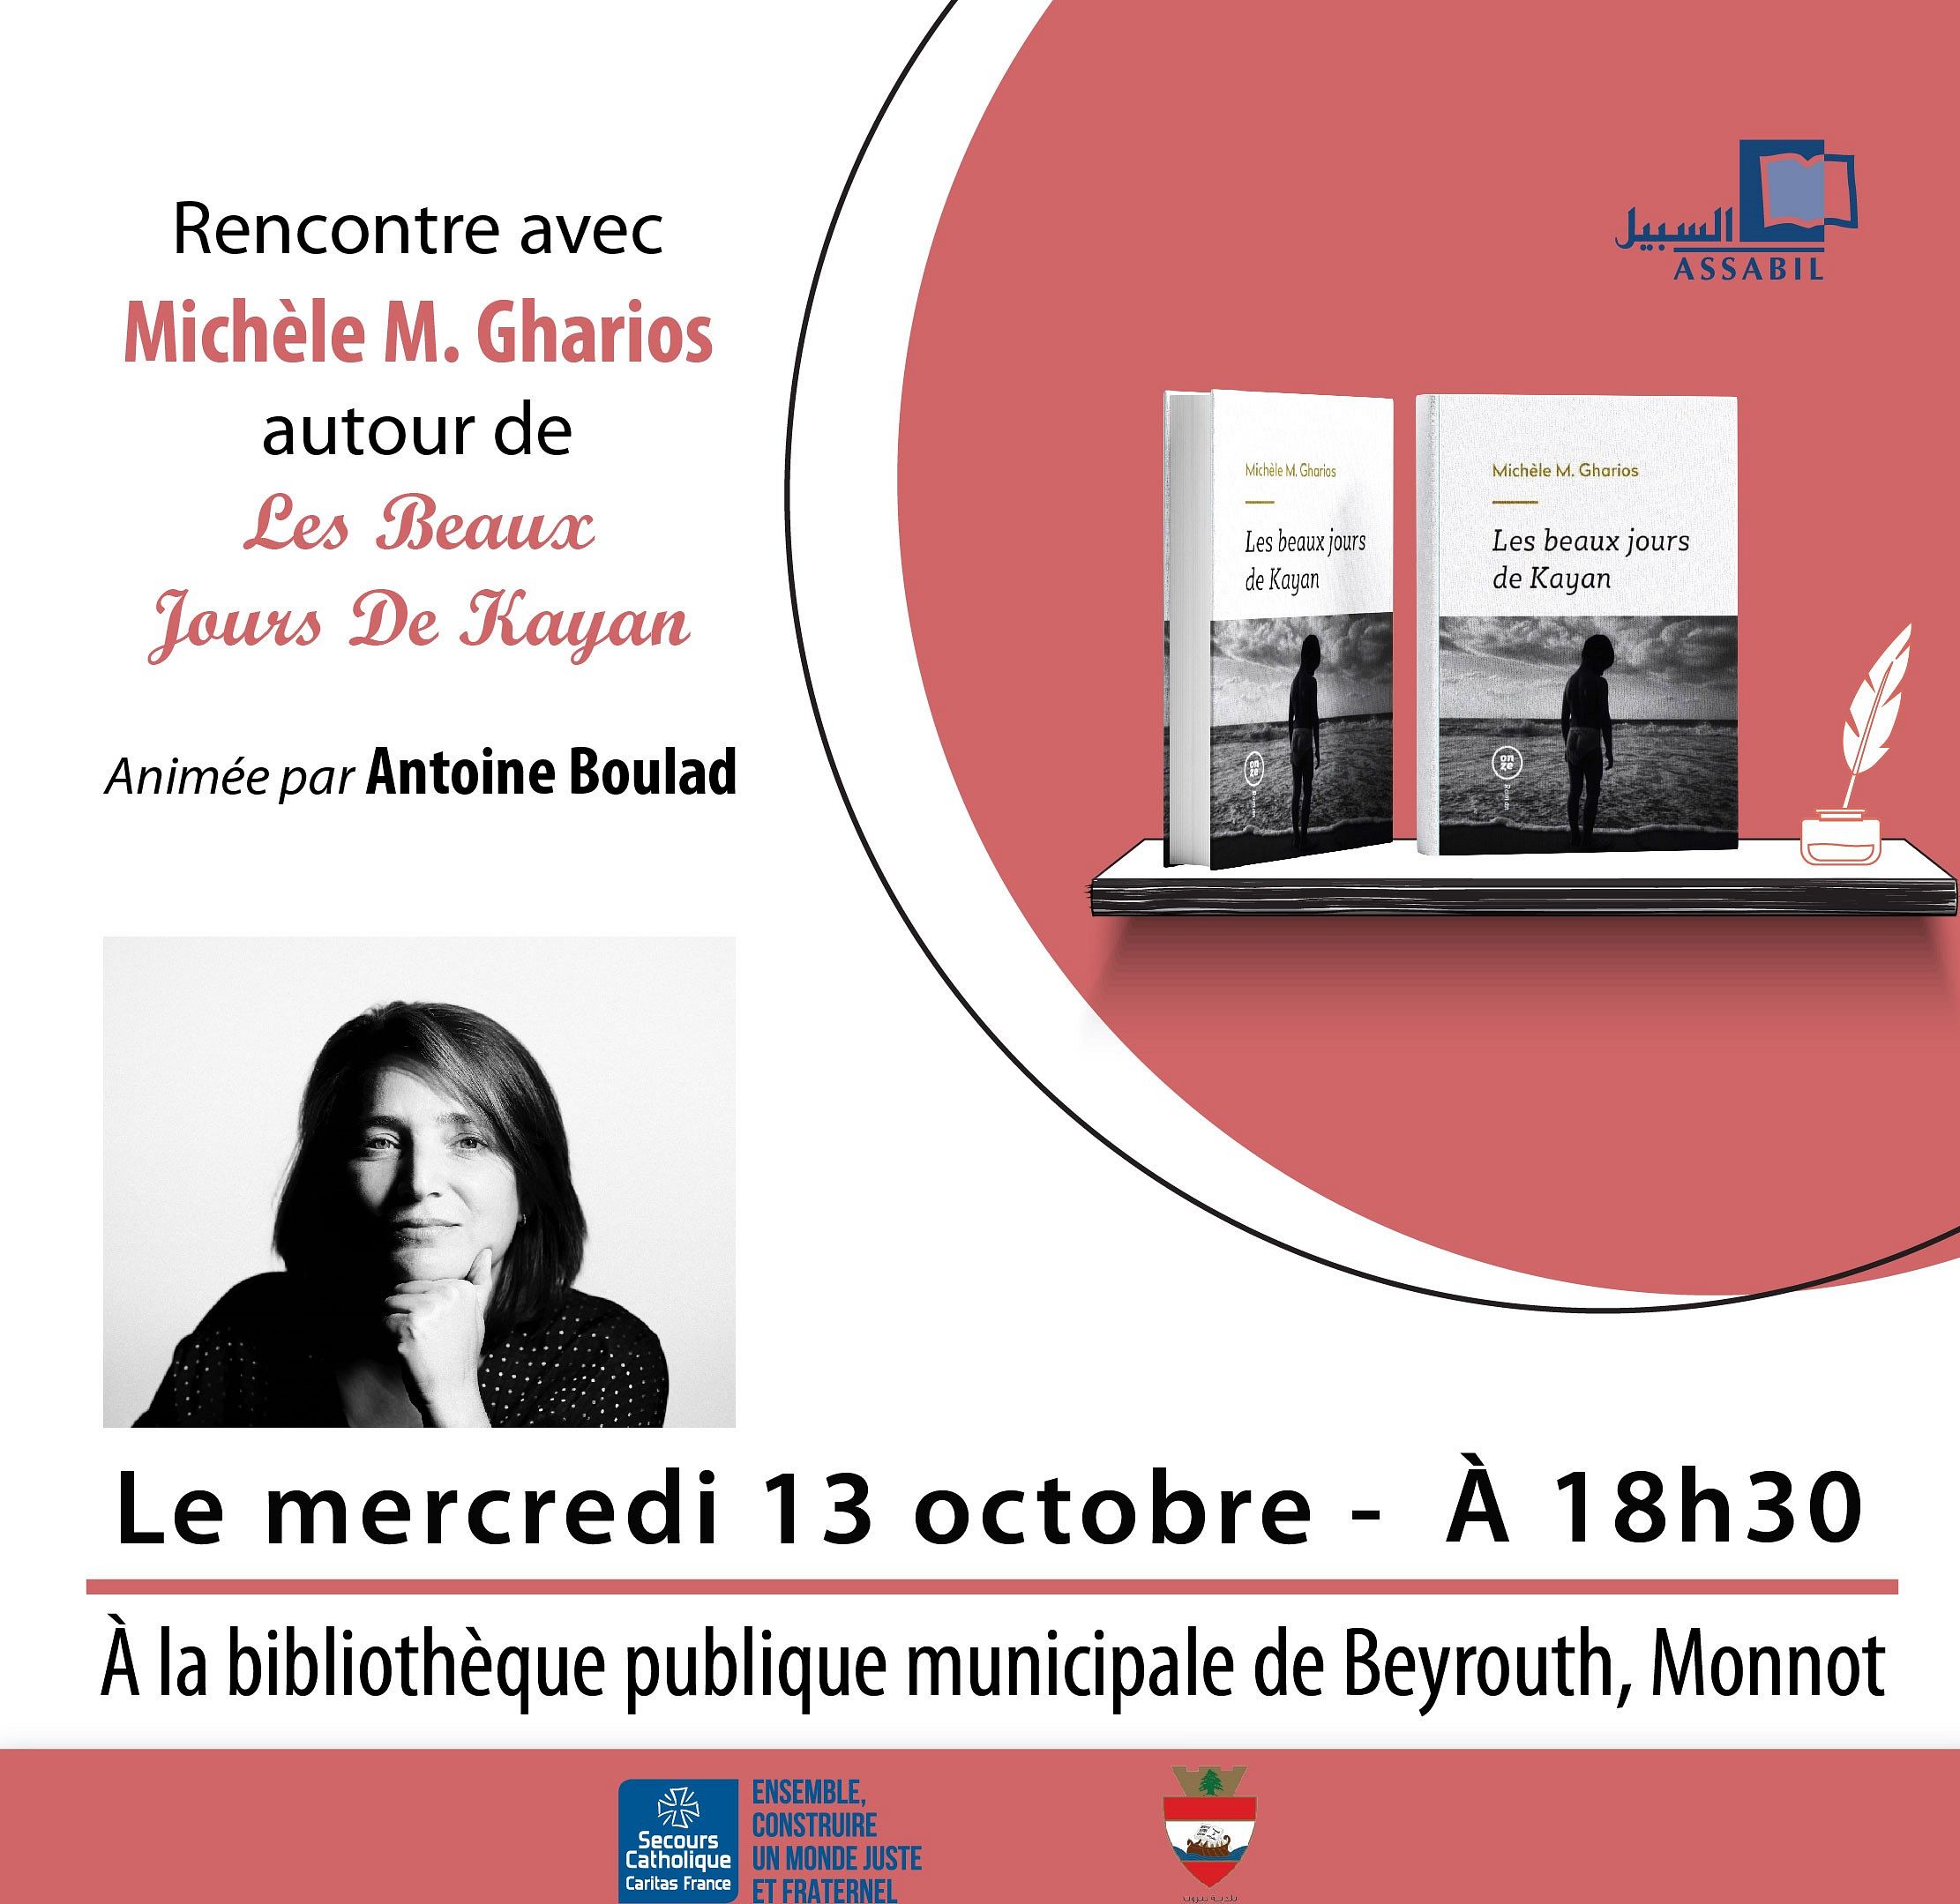 Rencontre avec Michèle M. Gharios thumbnail